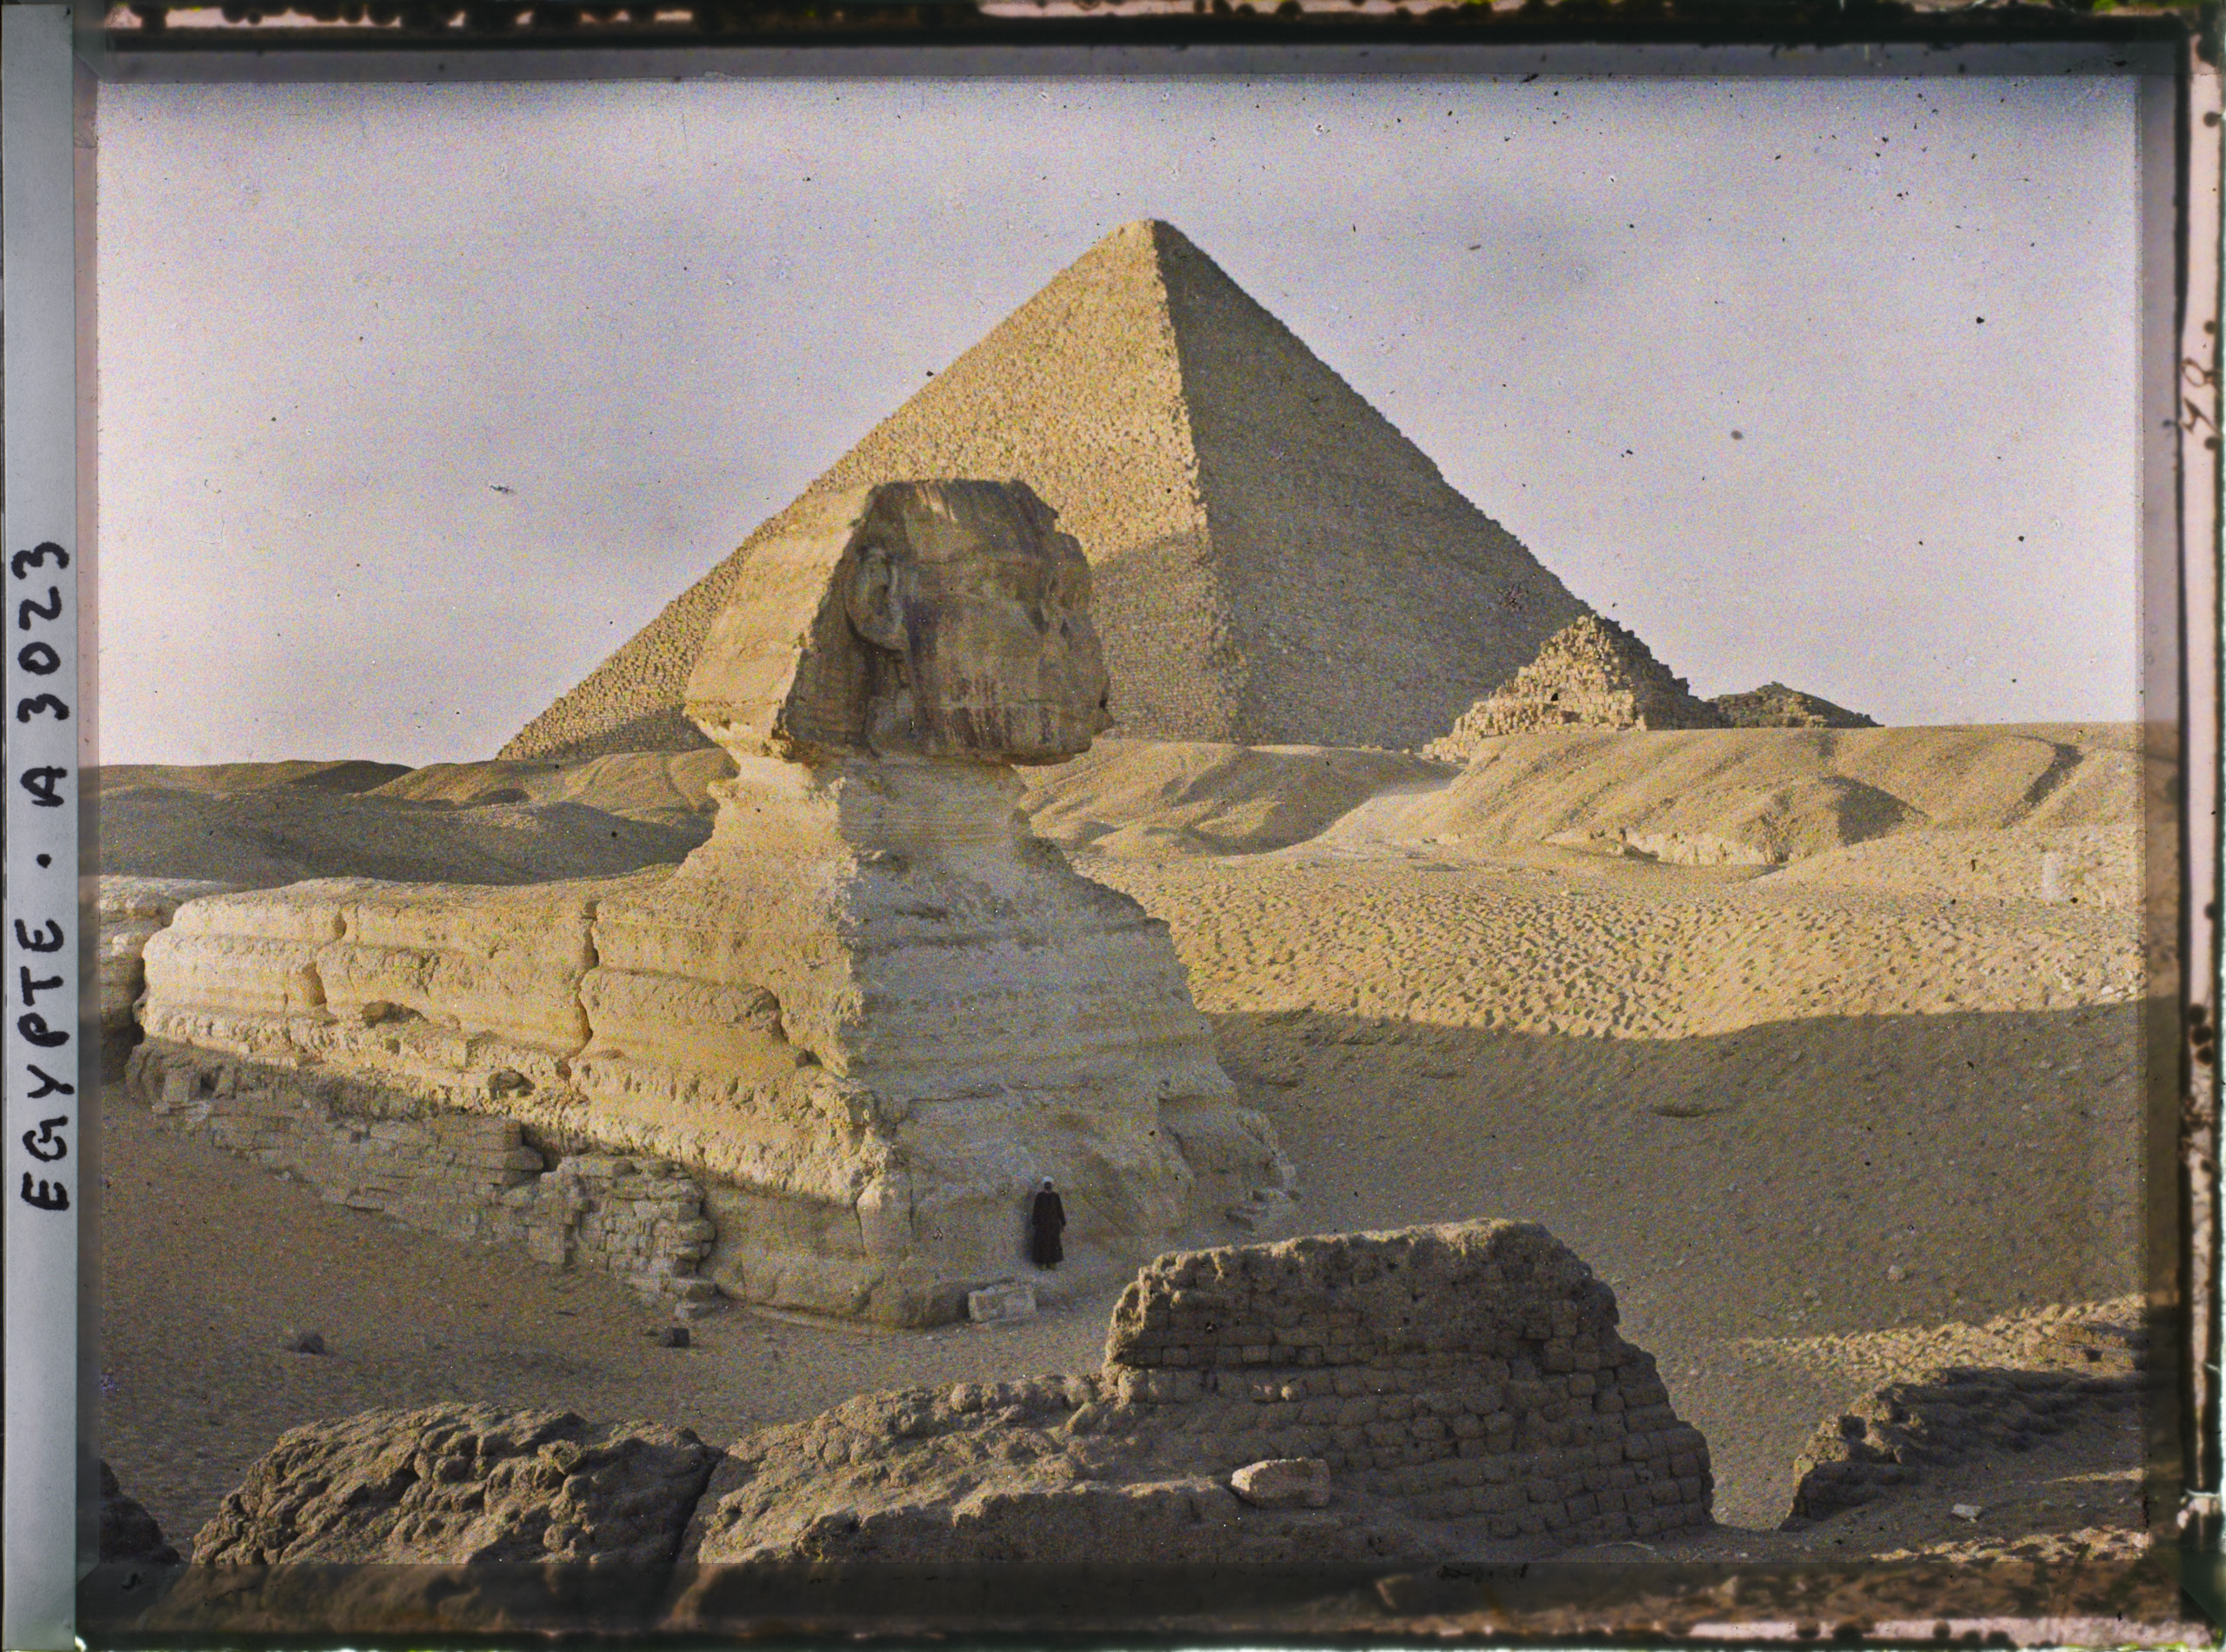 gizeh-egypte-afriquelesphinxetlapyramidedekheops_a3023.jpg